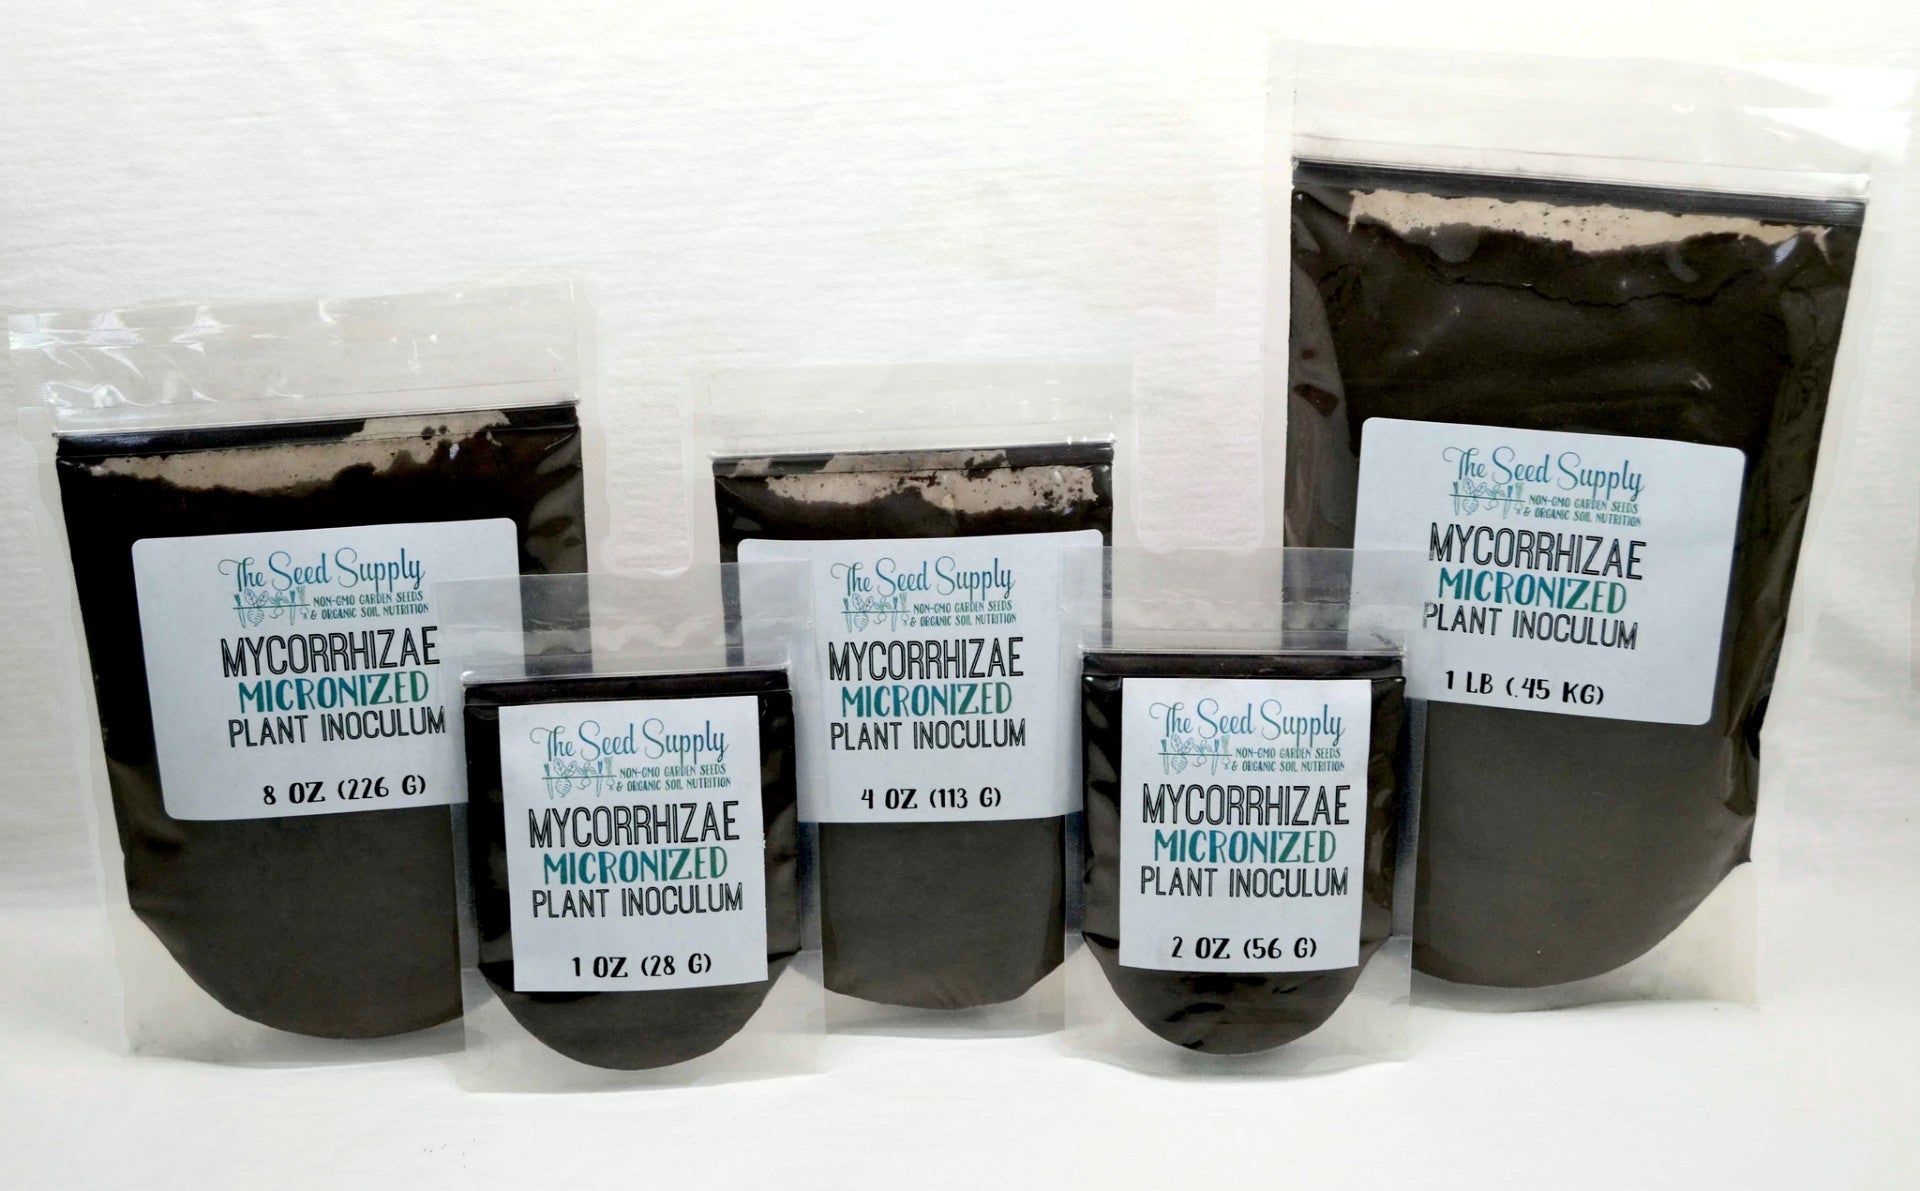 Soluble Mycorrhizae Fungi Plant Inoculum - Mycorrhizae - The Seed Supply - 3